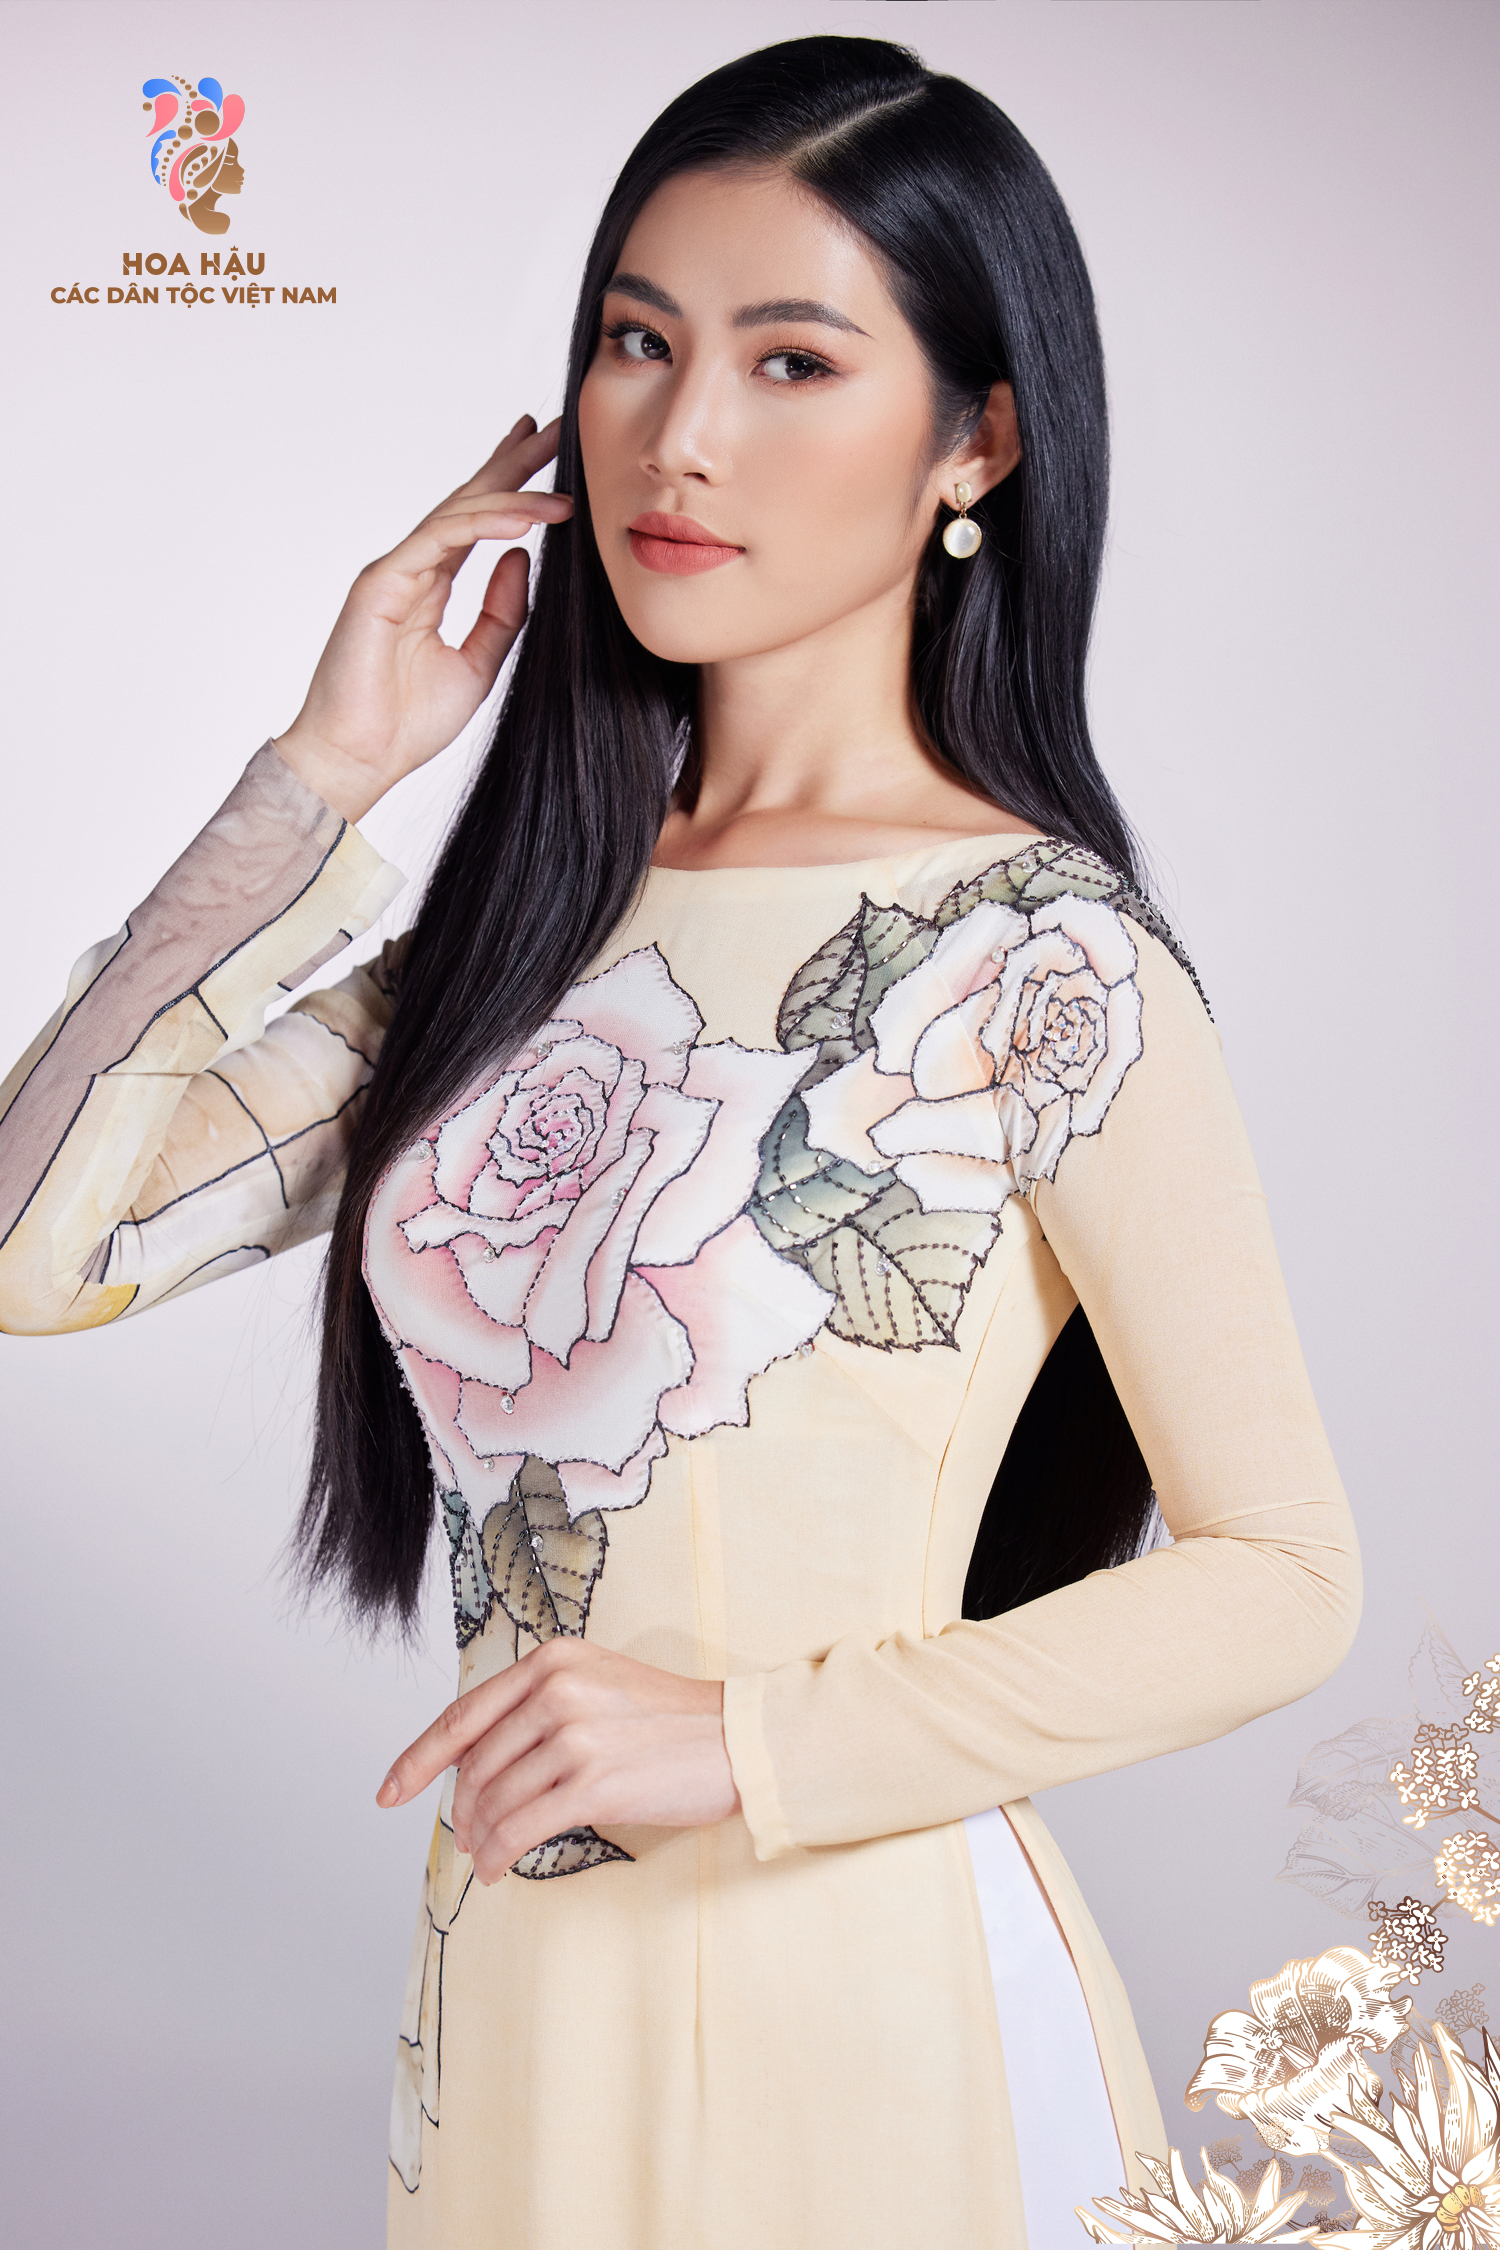 30 thí sinh Hoa hậu các dân tộc Việt Nam duyên dáng trong trang phục truyền thống - Ảnh 5.